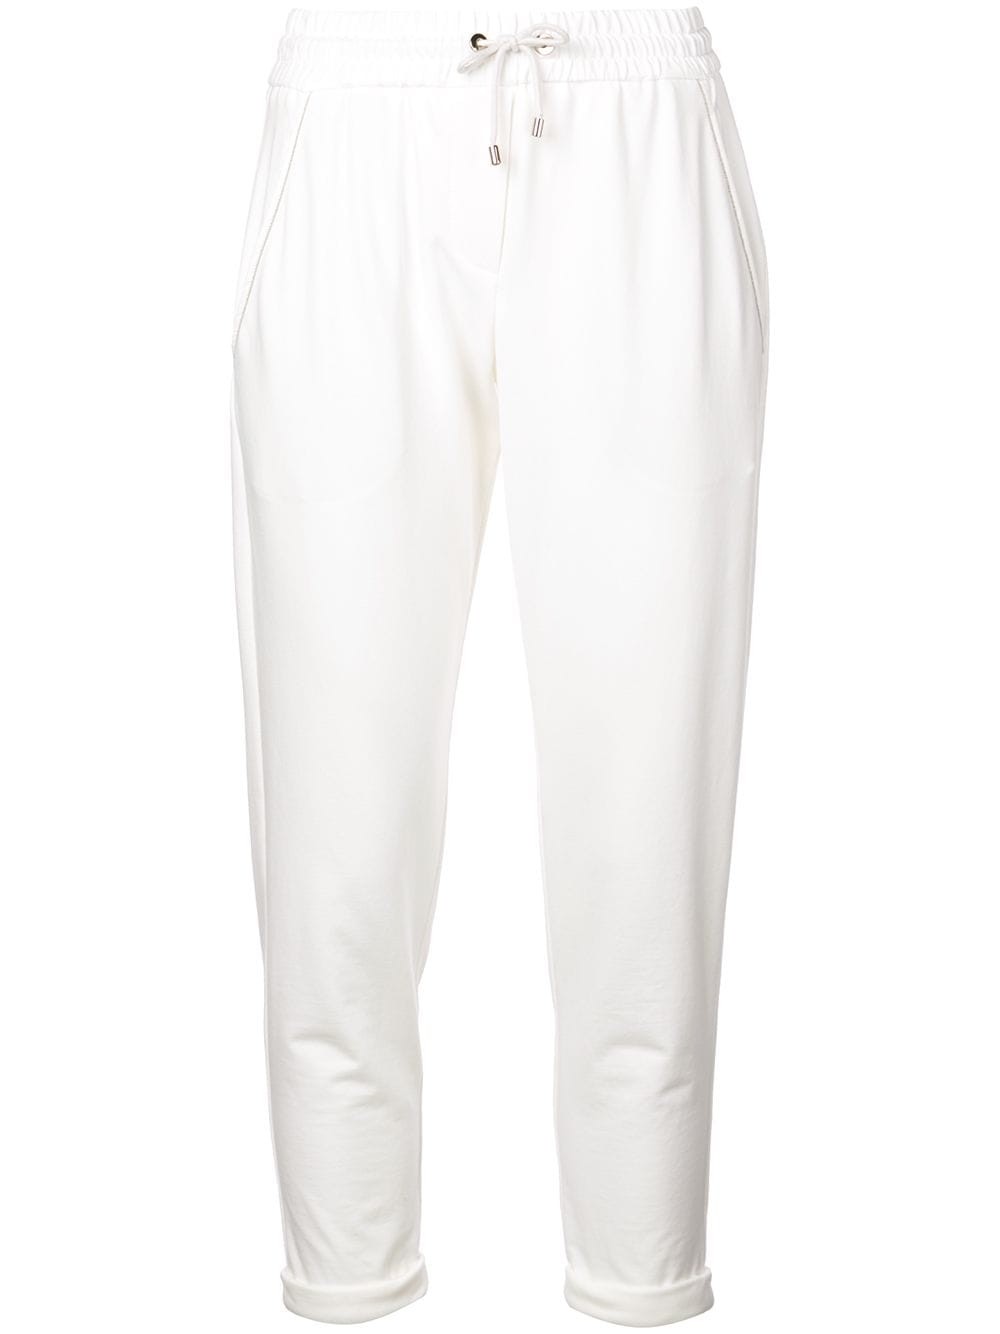 Pantalone in felpa leggera di cotone stretch con monile – Bianco